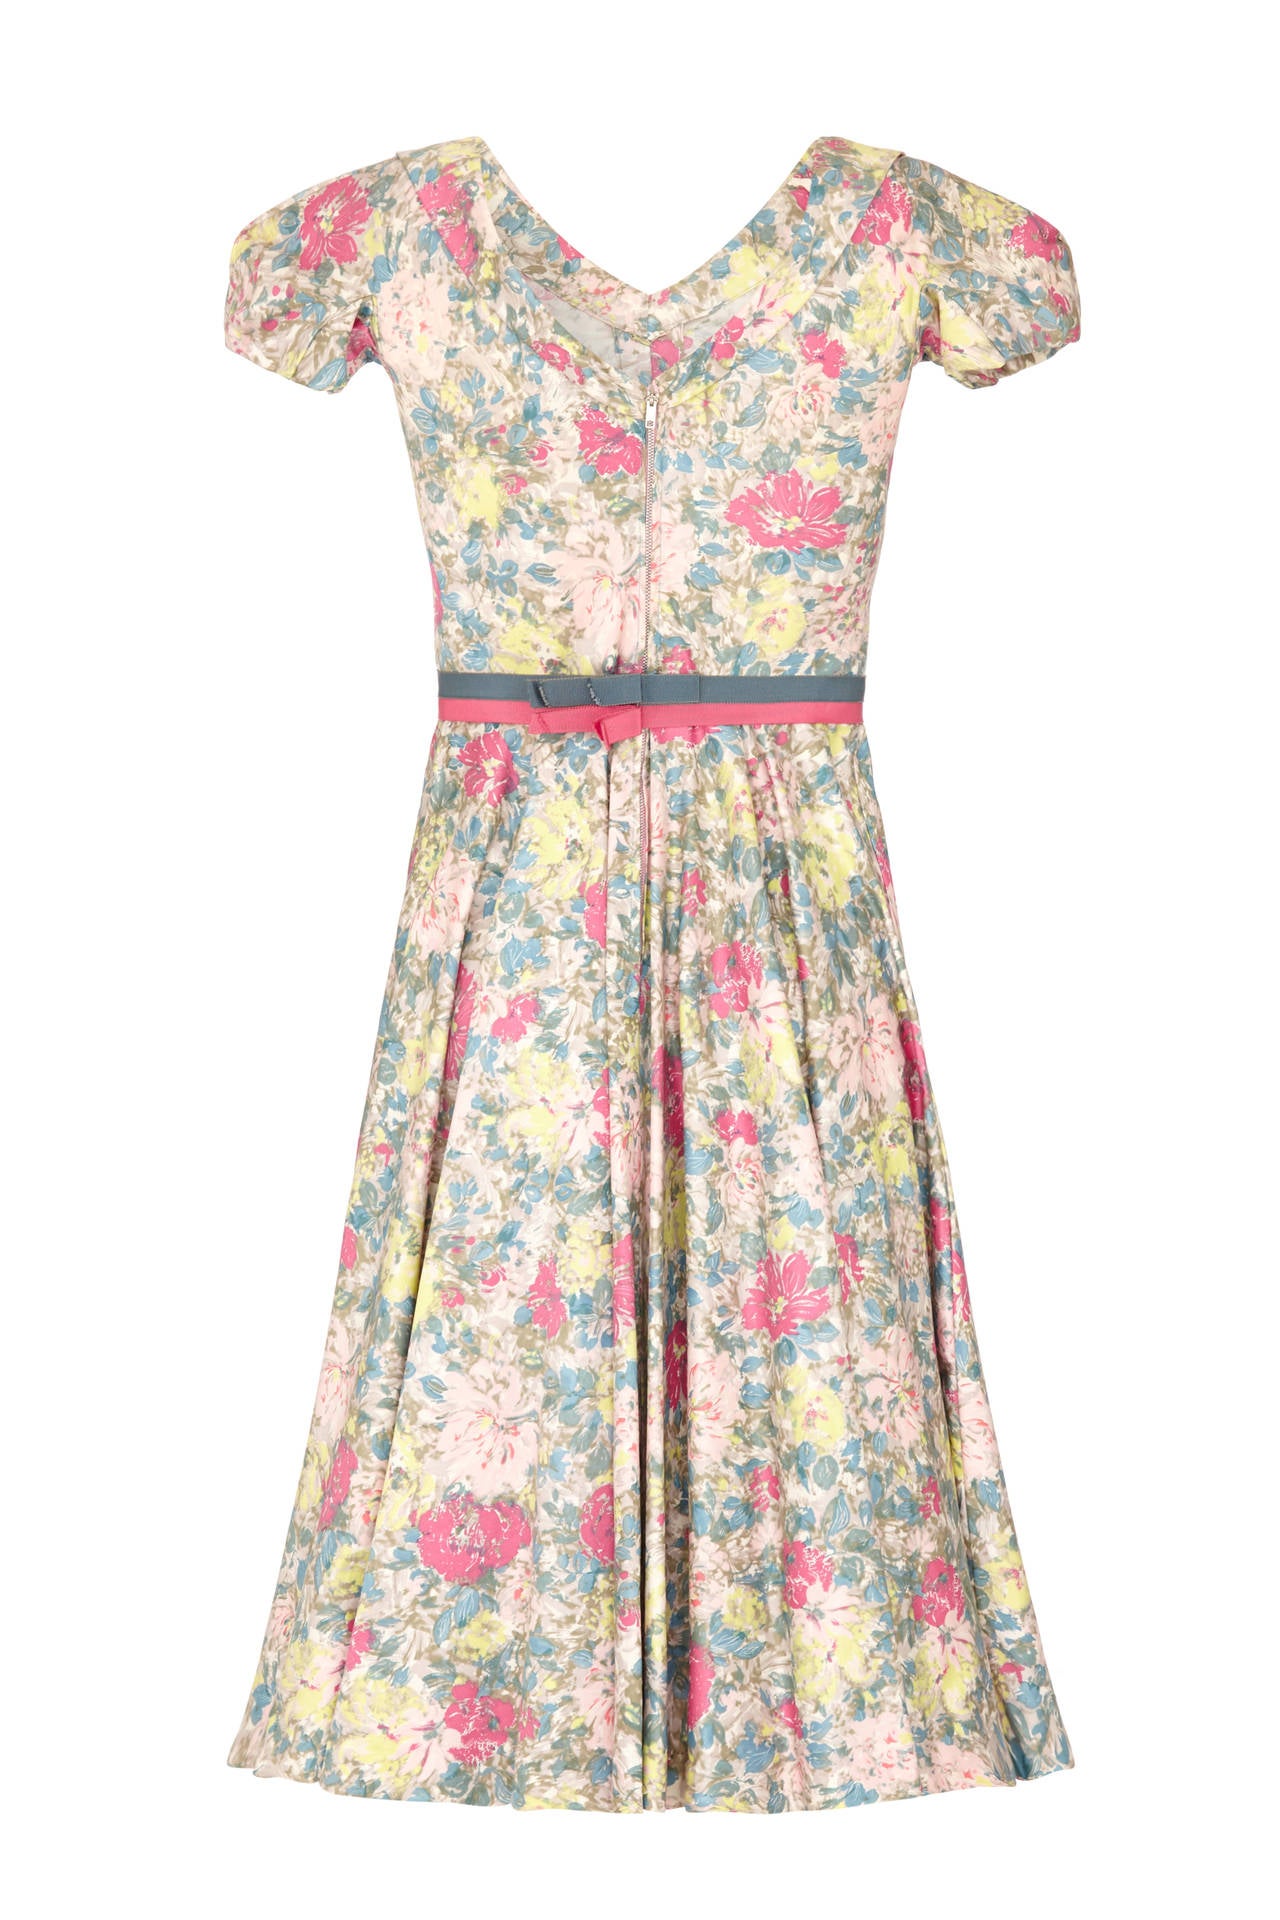 Cette ravissante robe en coton poli à imprimé floral des années 1950 ou du début des années 1960 du label américain Jane Derby, à l'époque où Oscar de la Renta en était le créateur principal, présente une confection exquise avec sa ceinture